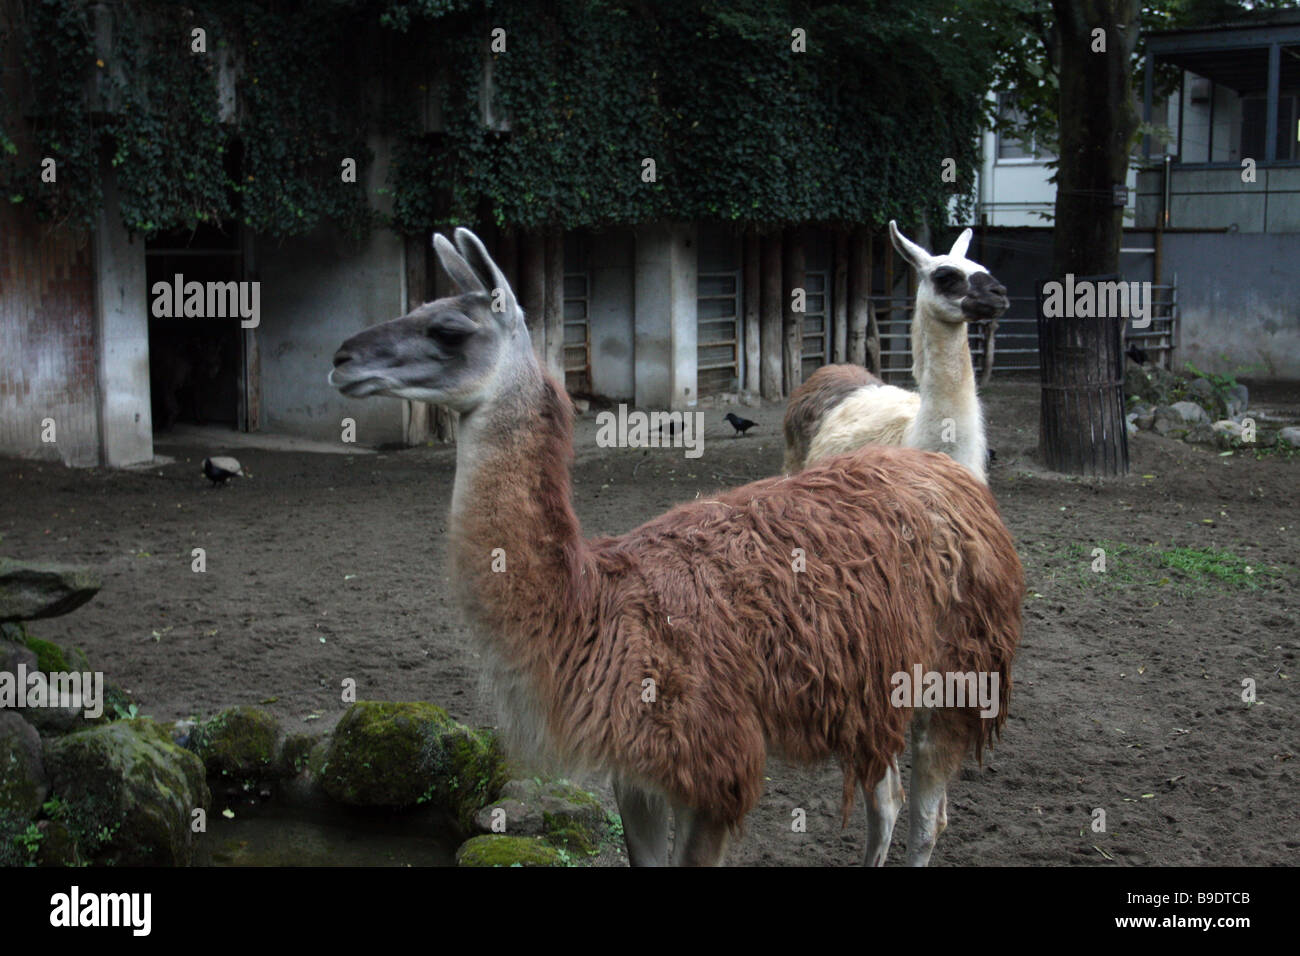 llamas at tokyo zoo Stock Photo